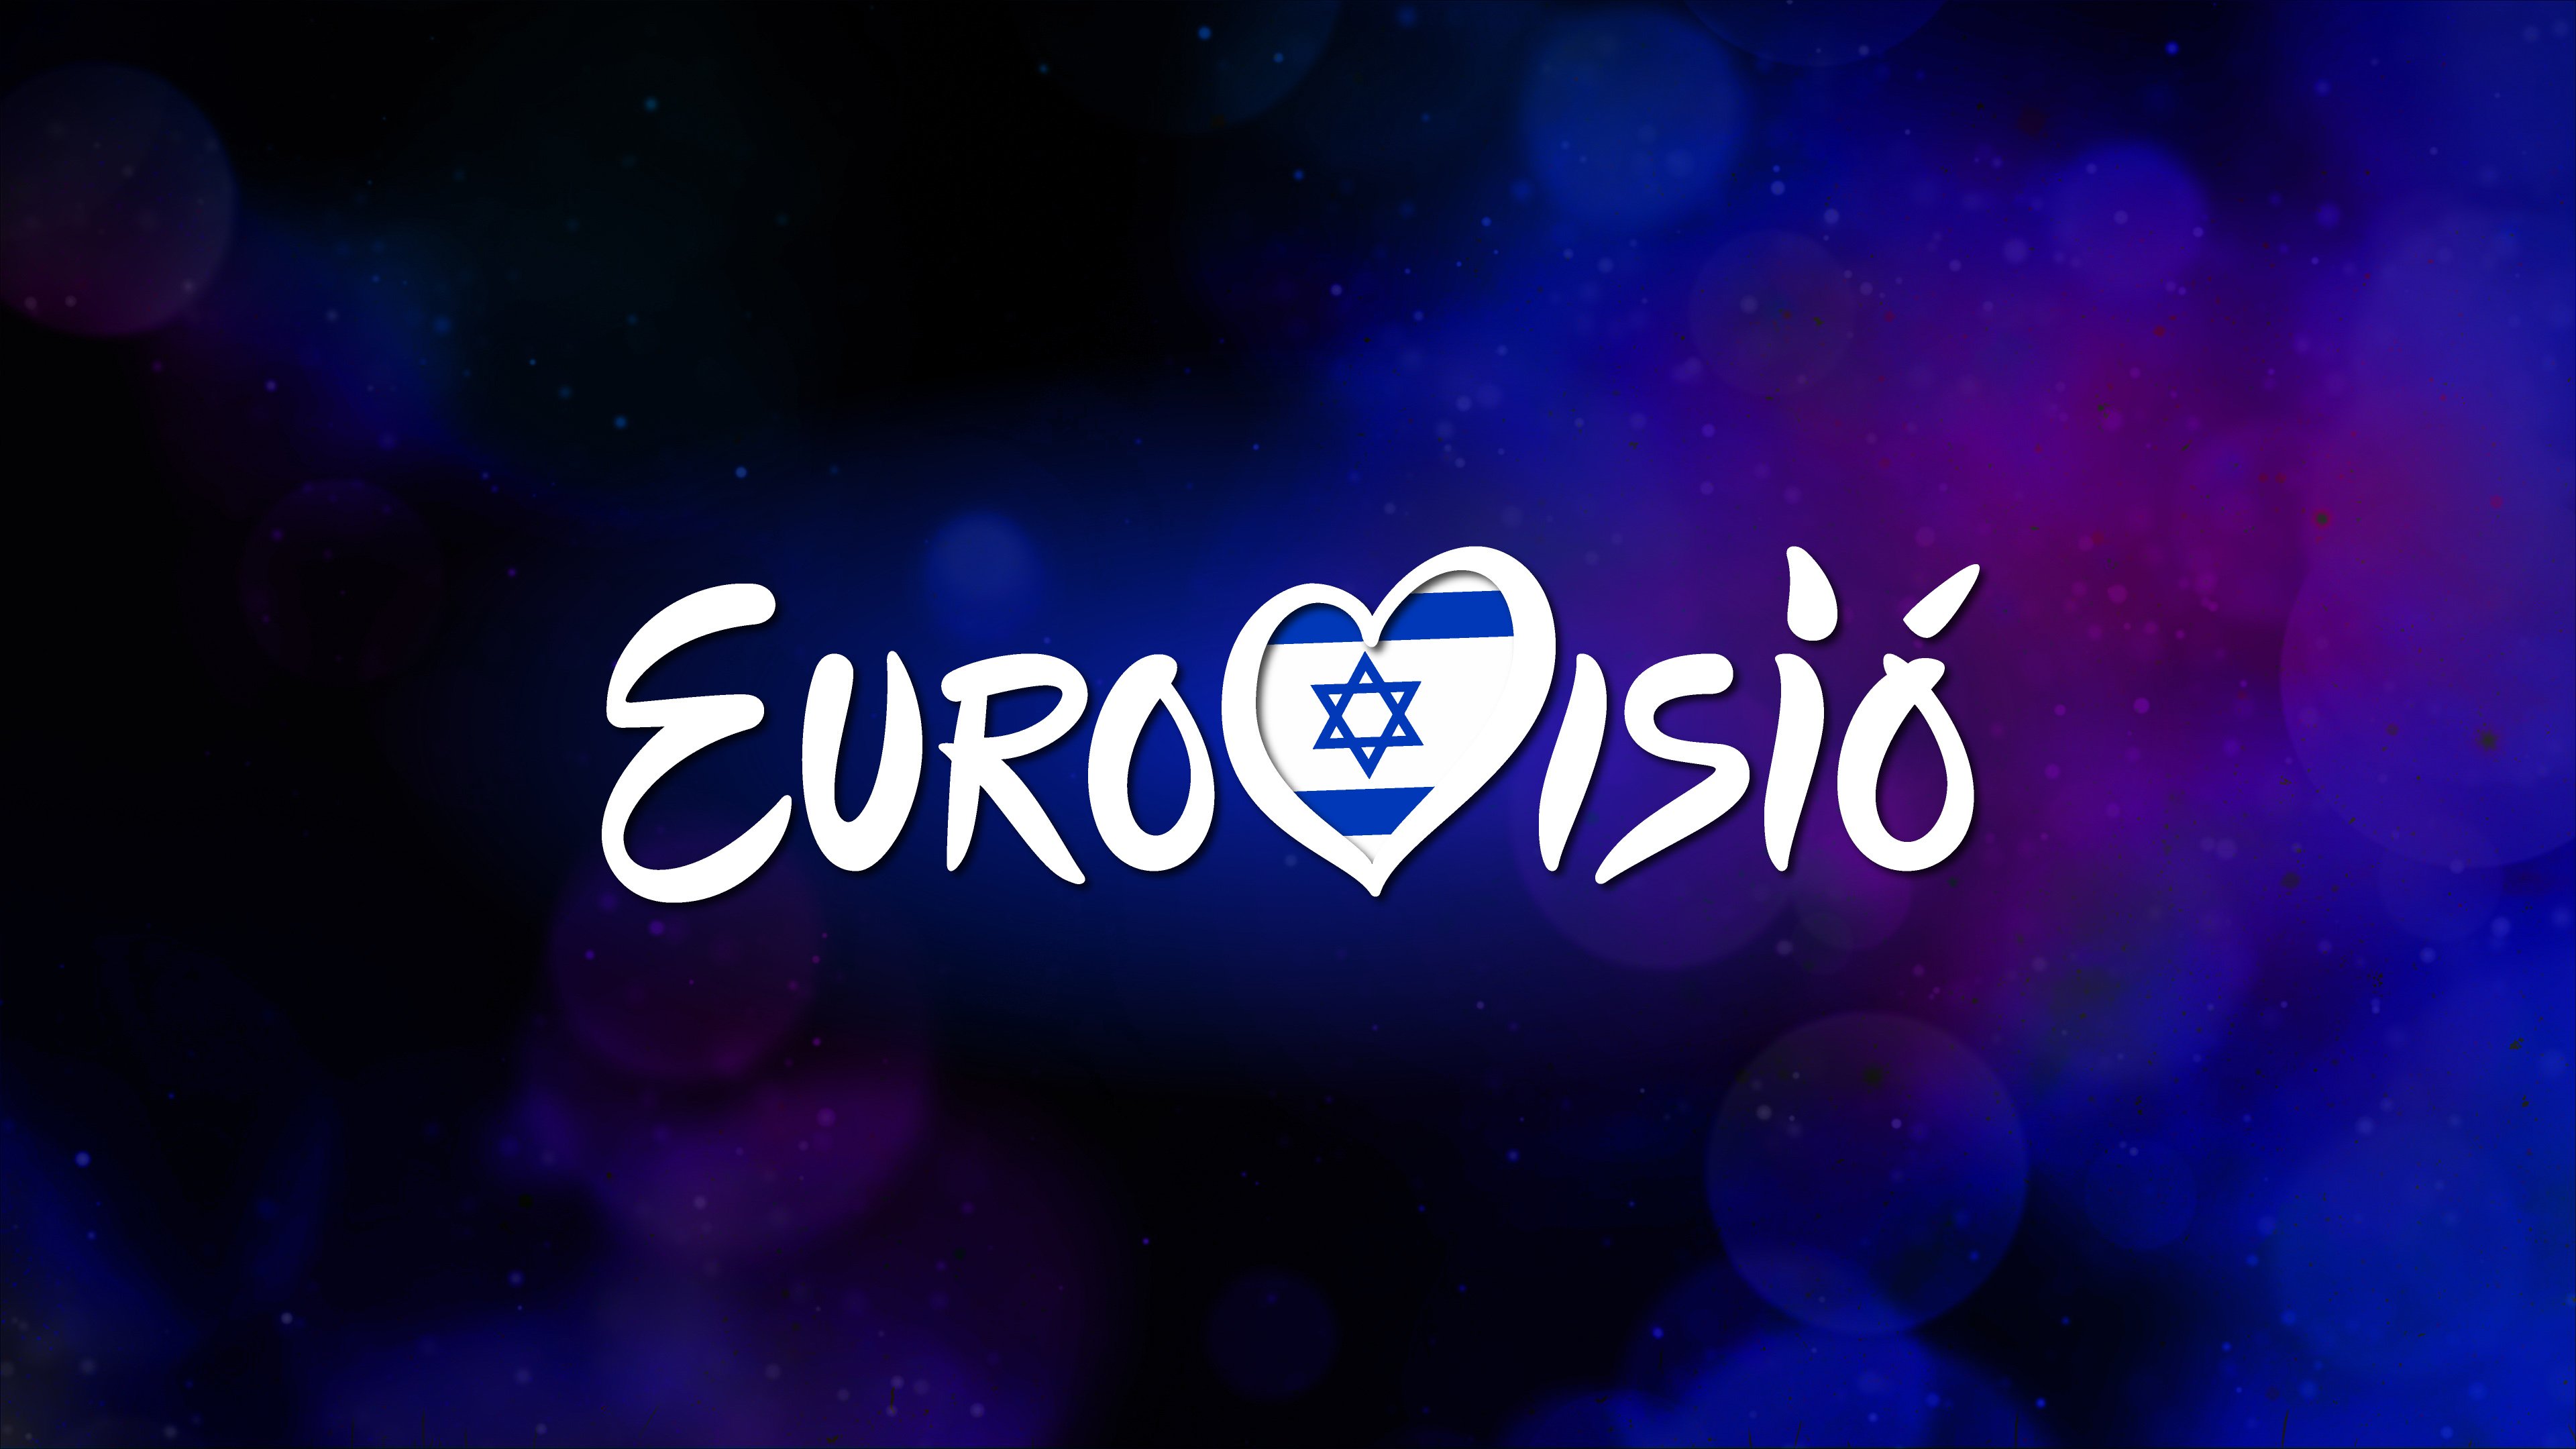 Las 10 curiosidades que no te puedes perder de Eurovisión 2019